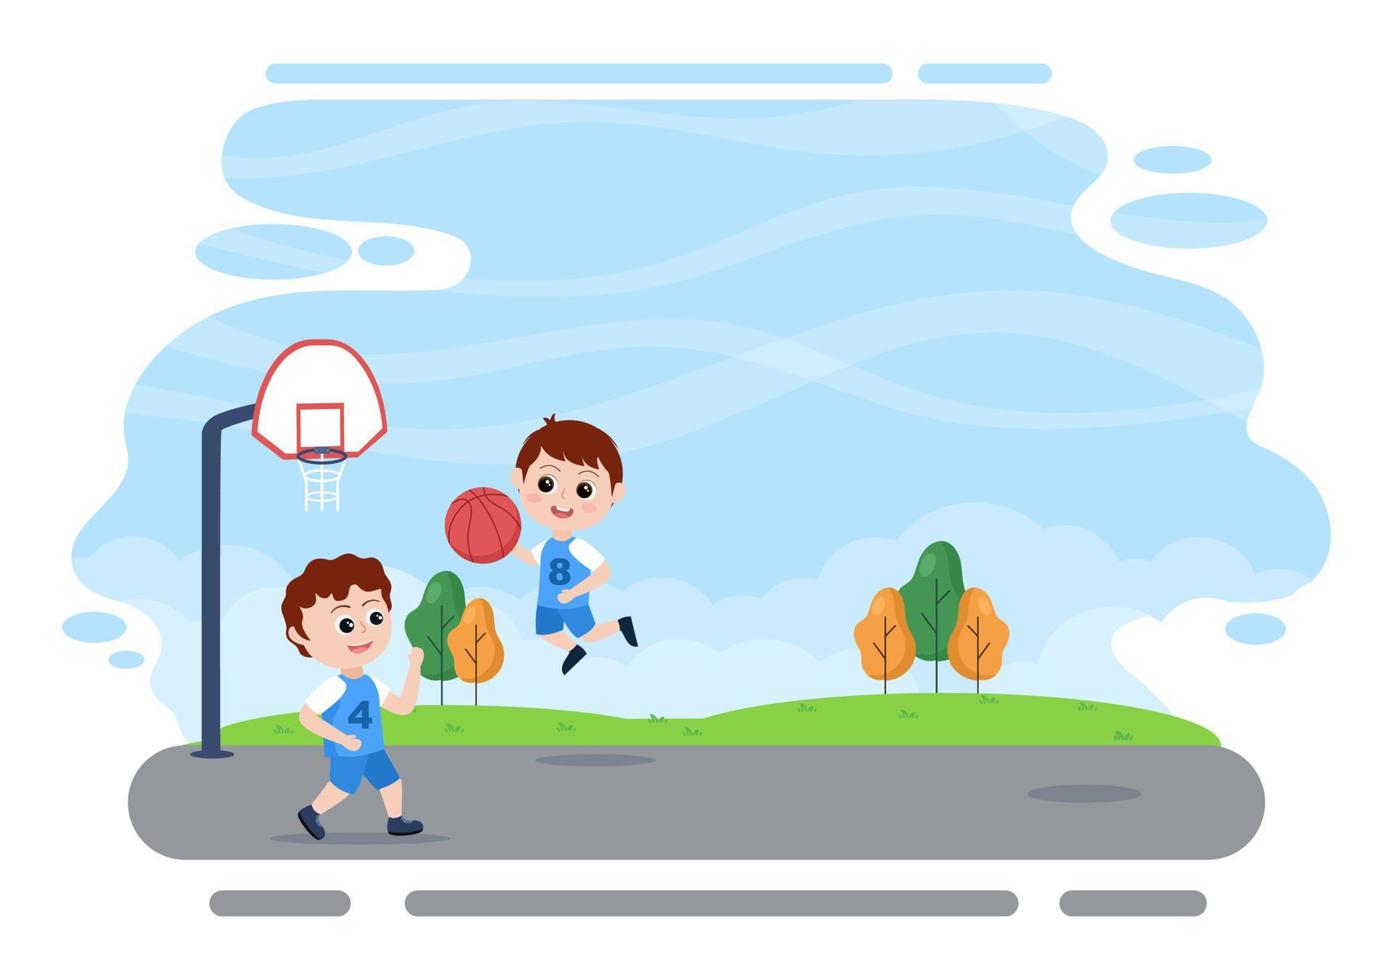 dessin animé d'enfants heureux jouant au basket-ball illustration de conception plate portant un uniforme de panier dans un tribunal extérieur pour le fond, l'affiche ou la bannière vecteur